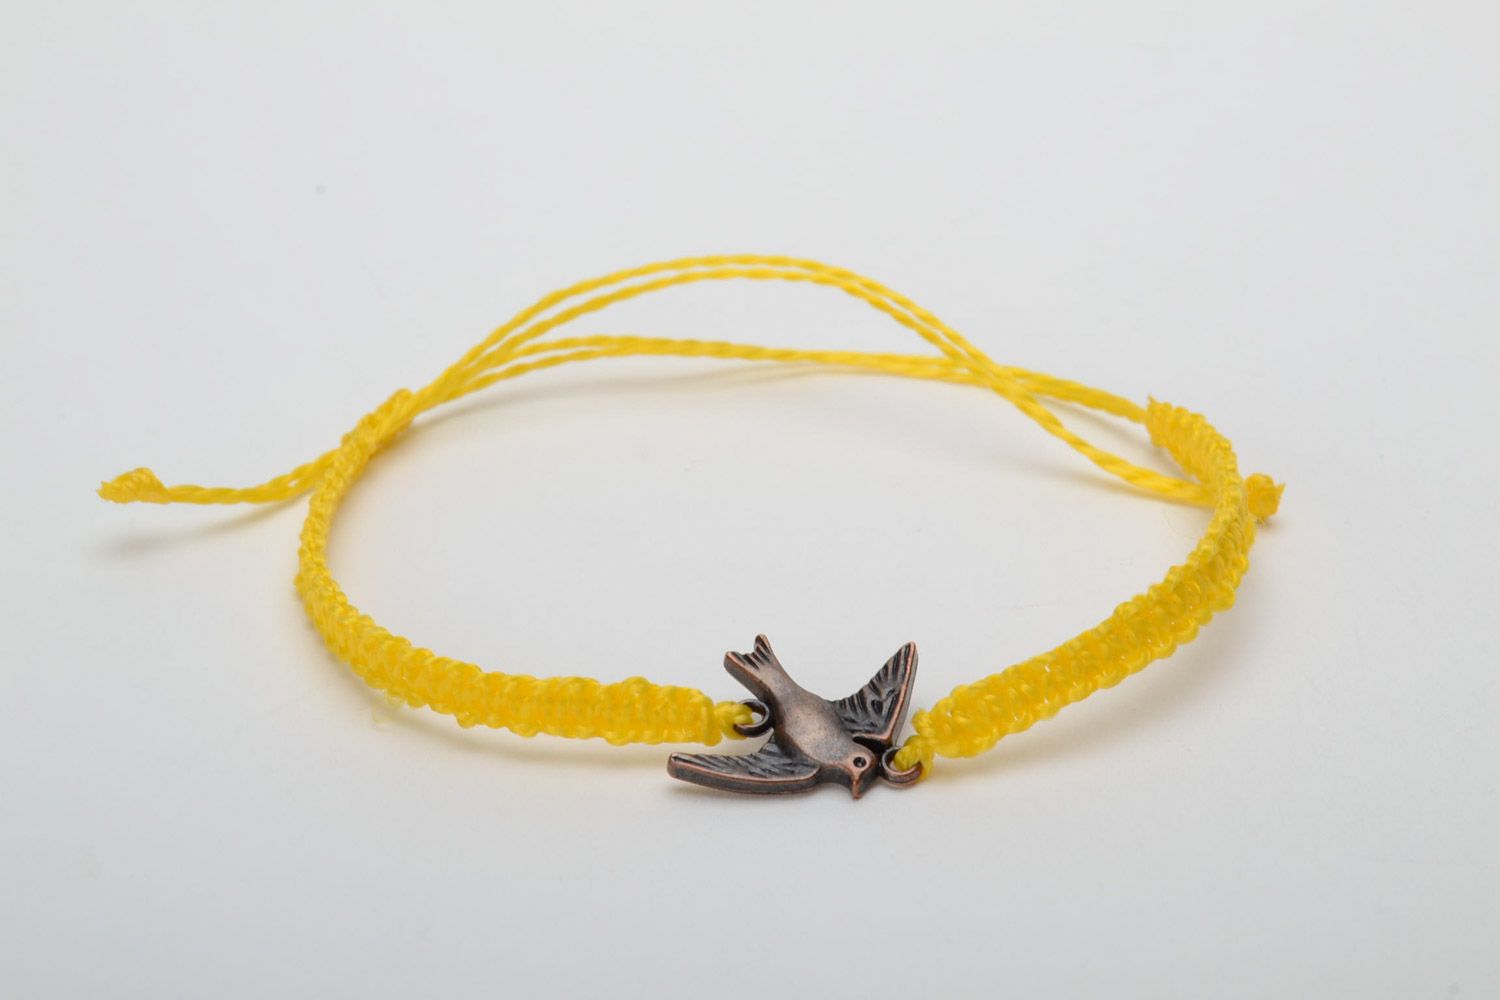 Regulierbares handmade Armband aus Fäden mit Anhänger Vogel in Makramee Technik foto 5